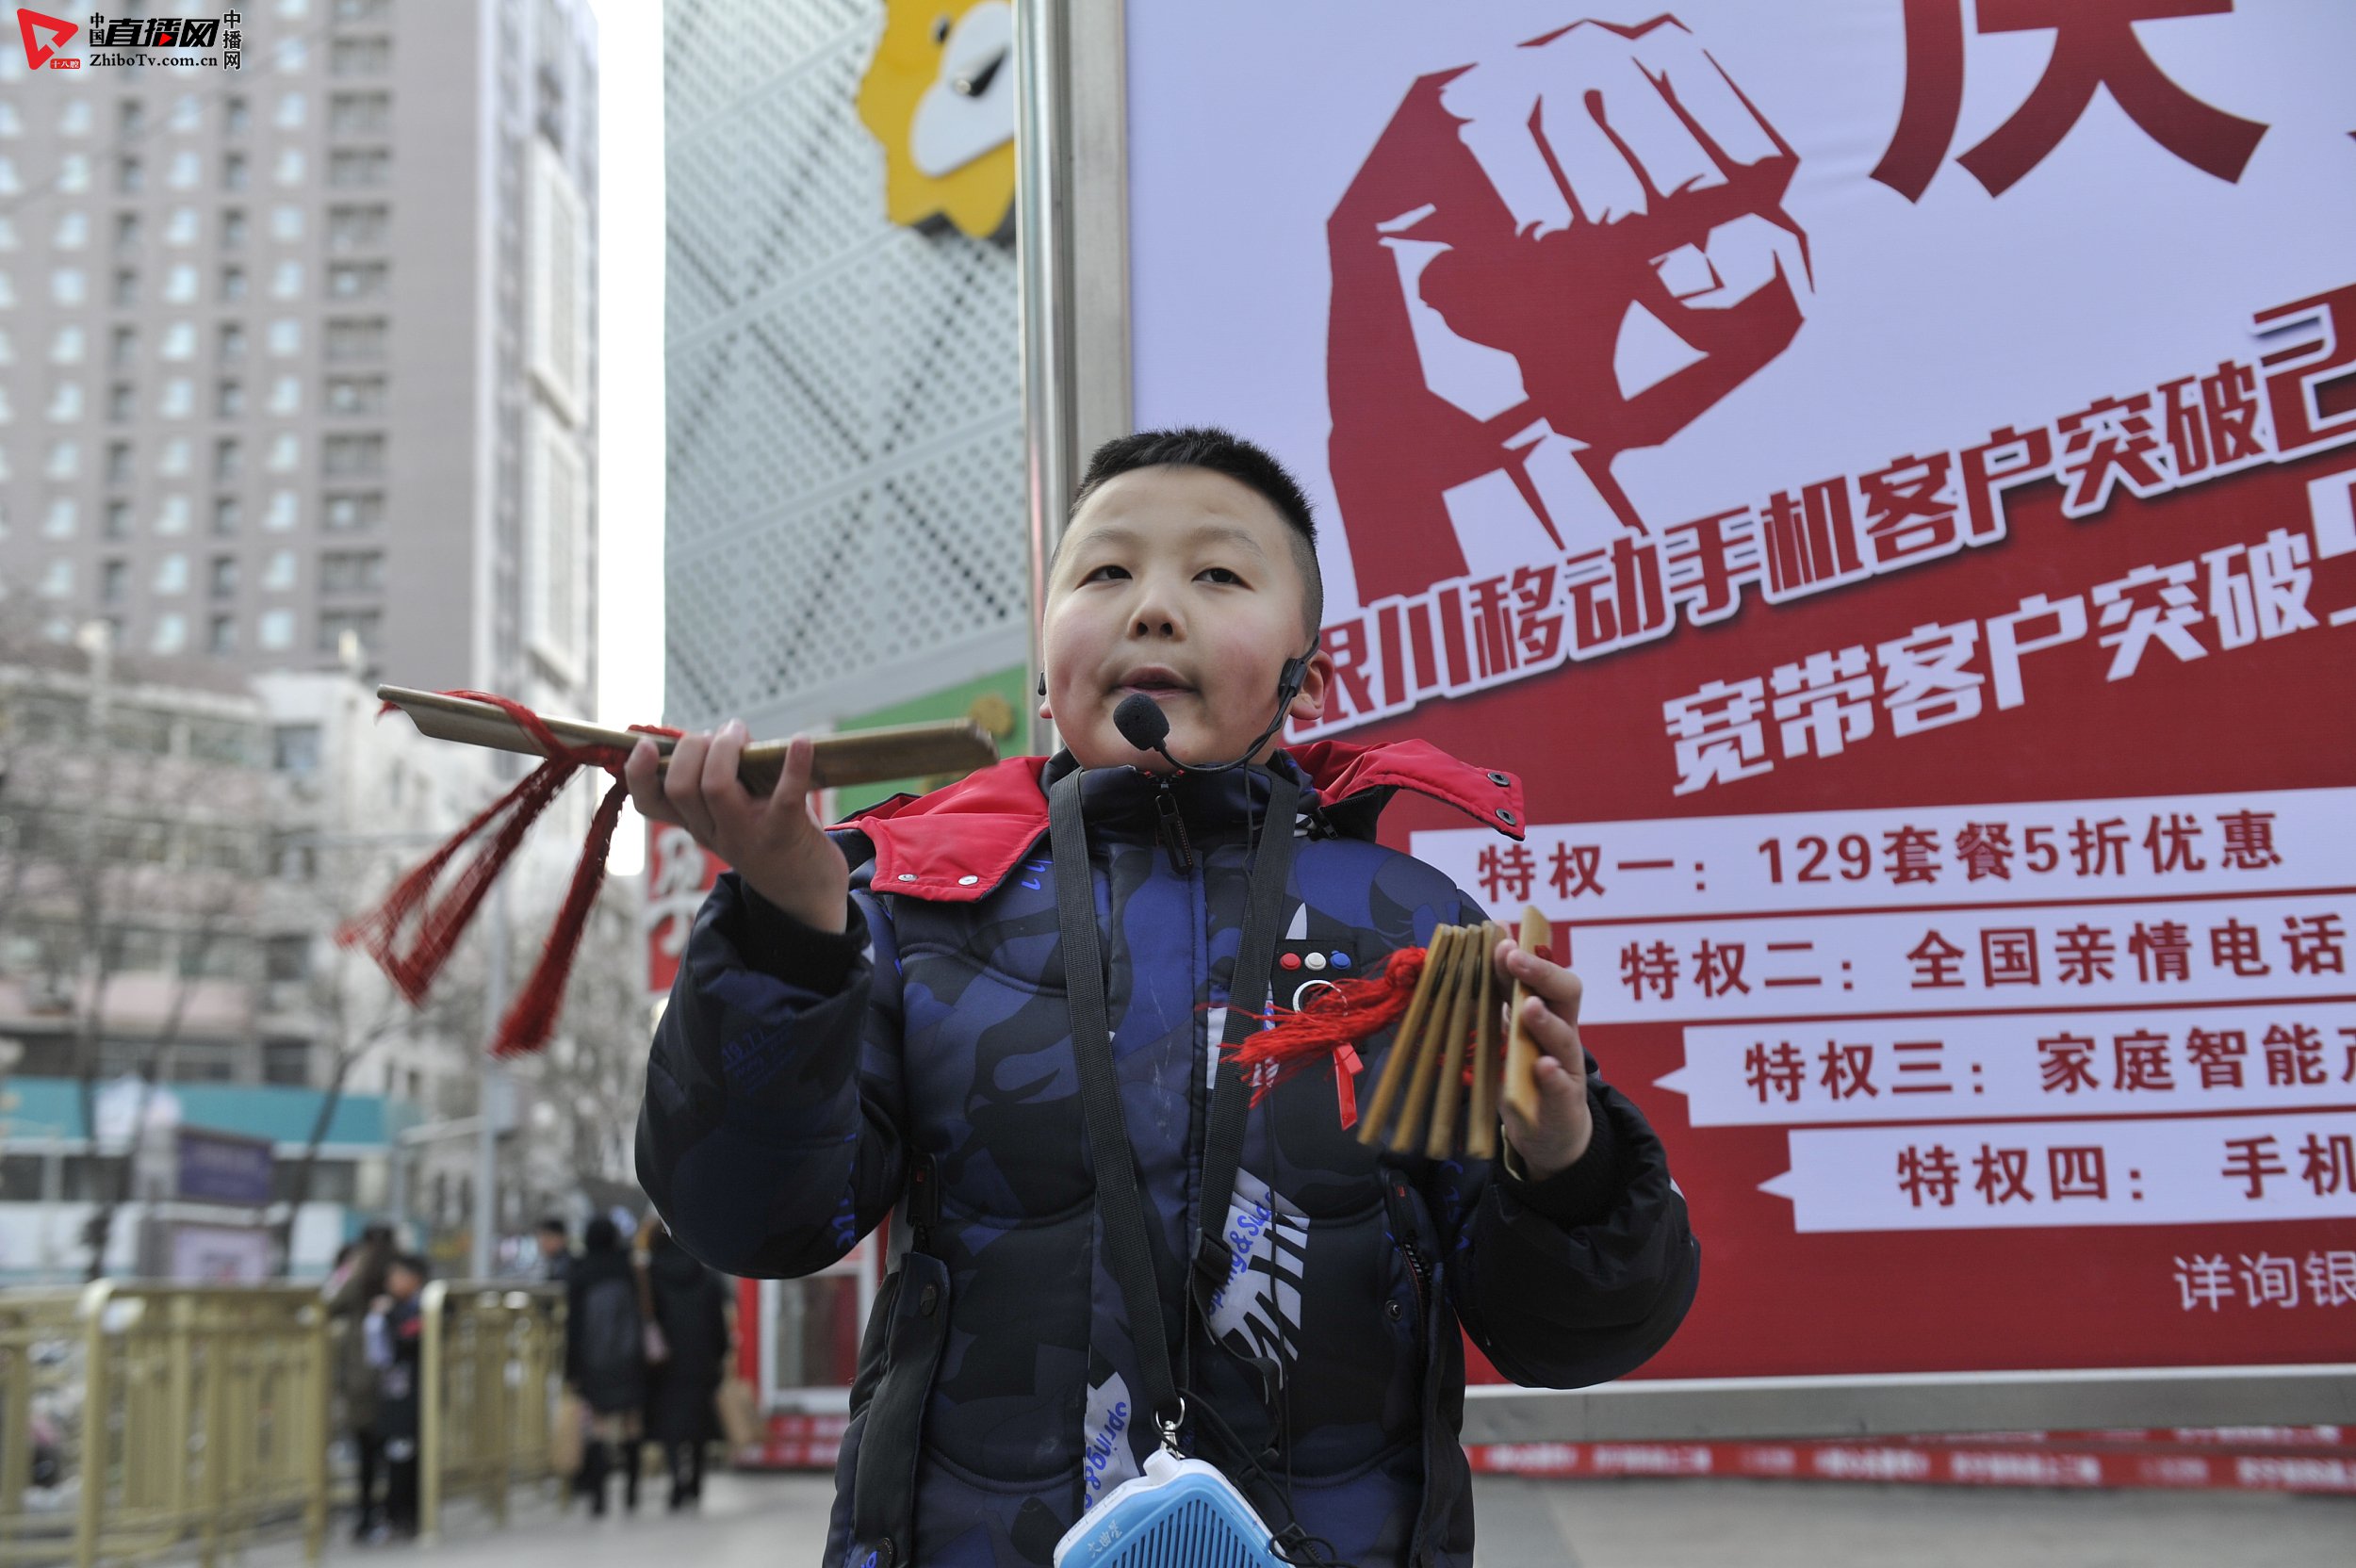 在银川市鼓楼步行街,9岁的刘宁波小朋友正在街头表演快板